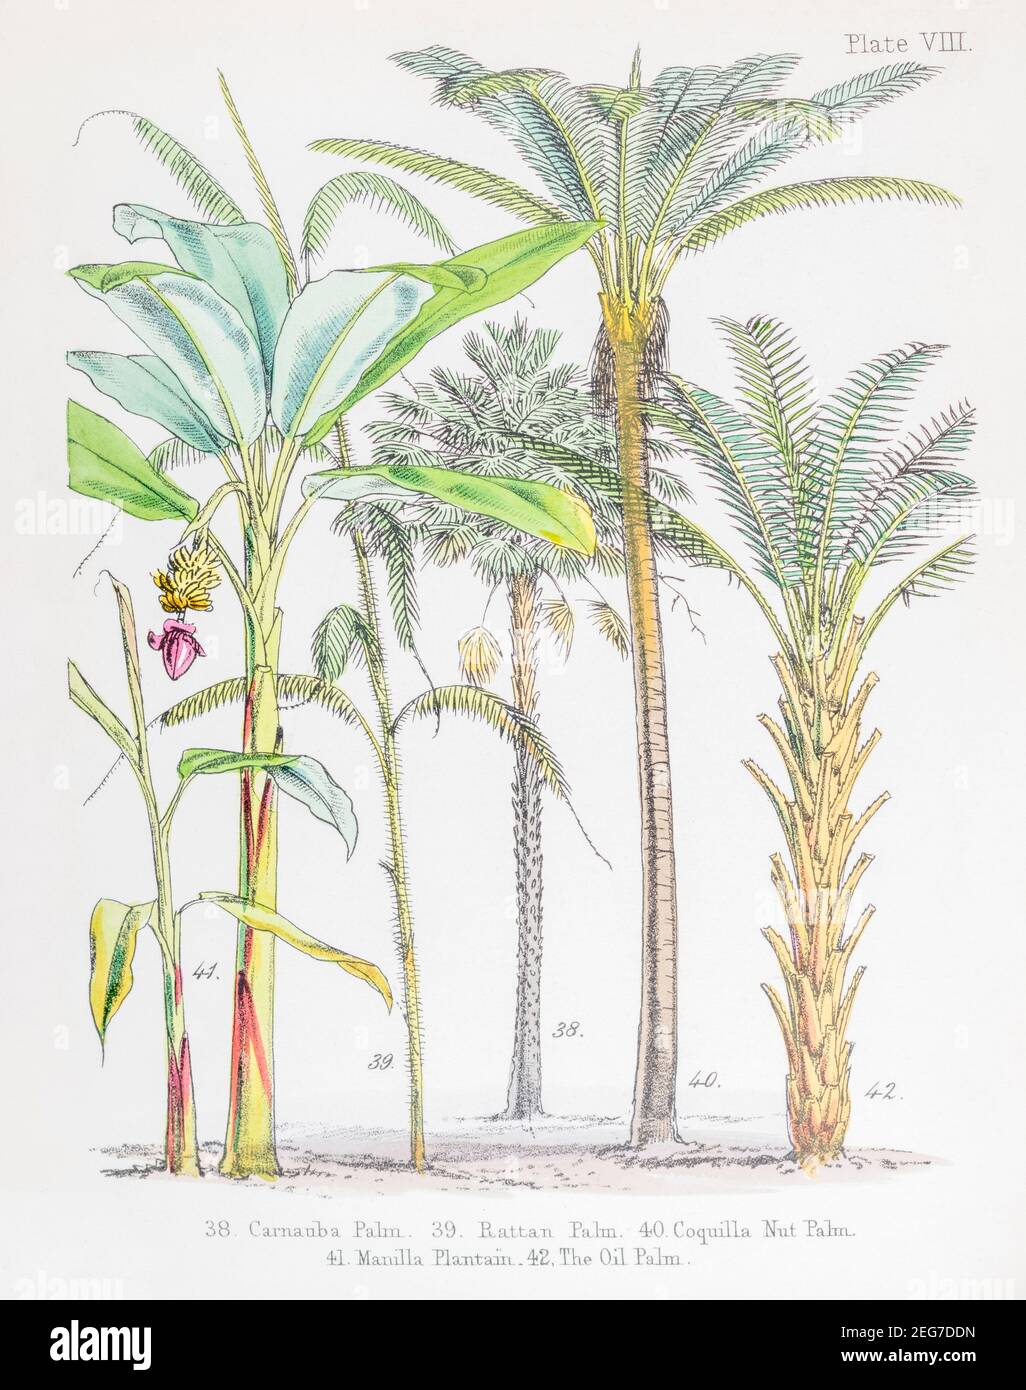 19th c. ilustración botánica victoriana pintada a mano de Carnauba Wax Palm, Ratán, Coquilla nut Palms, Manilla Plain & Oil Palm. Ver notas. Foto de stock